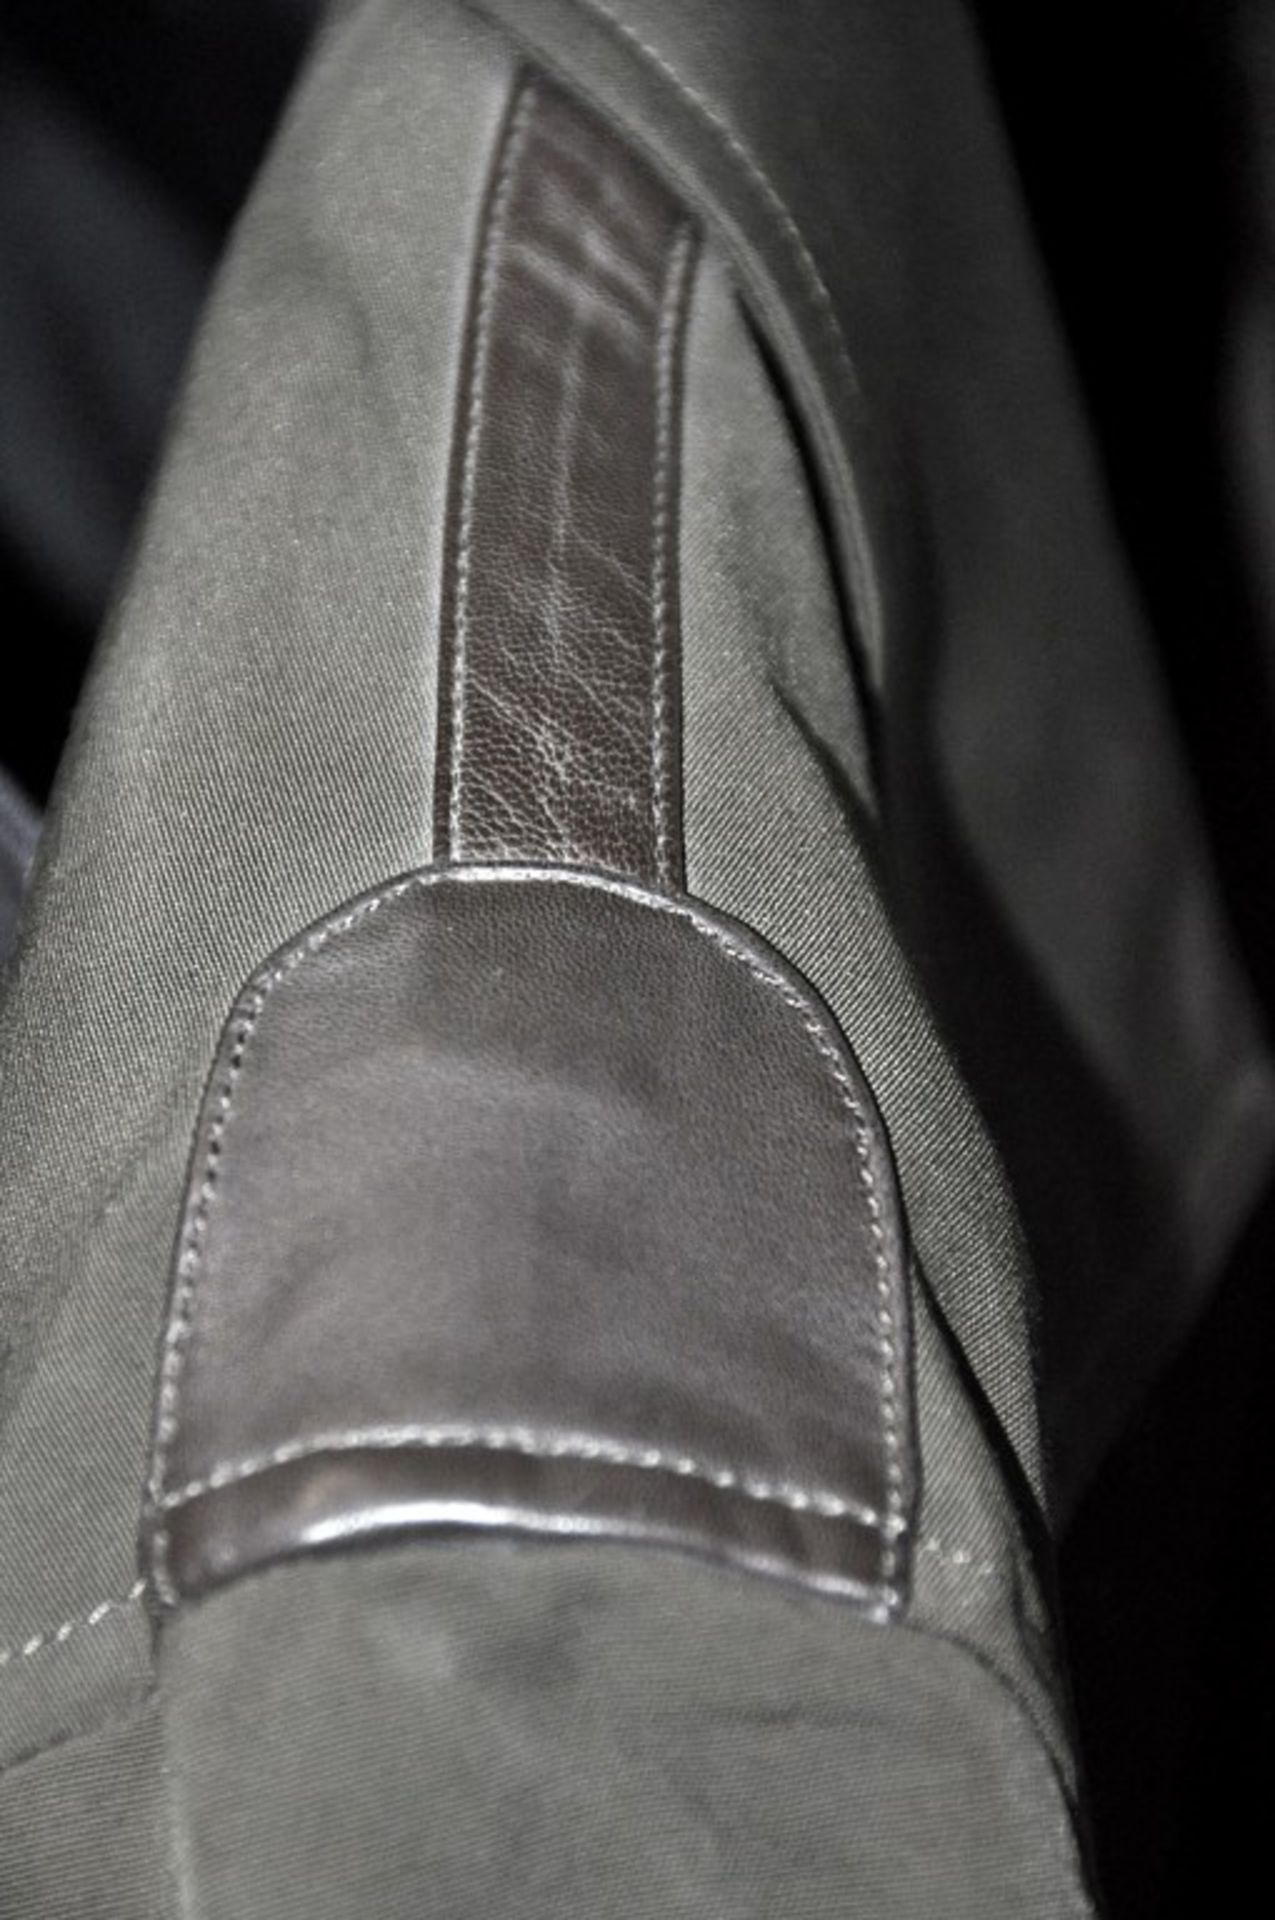 1 x Men's Long Sleeve Jacket By International Luxury Brand "Vasto" (BAS7101) – Size: Large - Colour: - Image 9 of 9